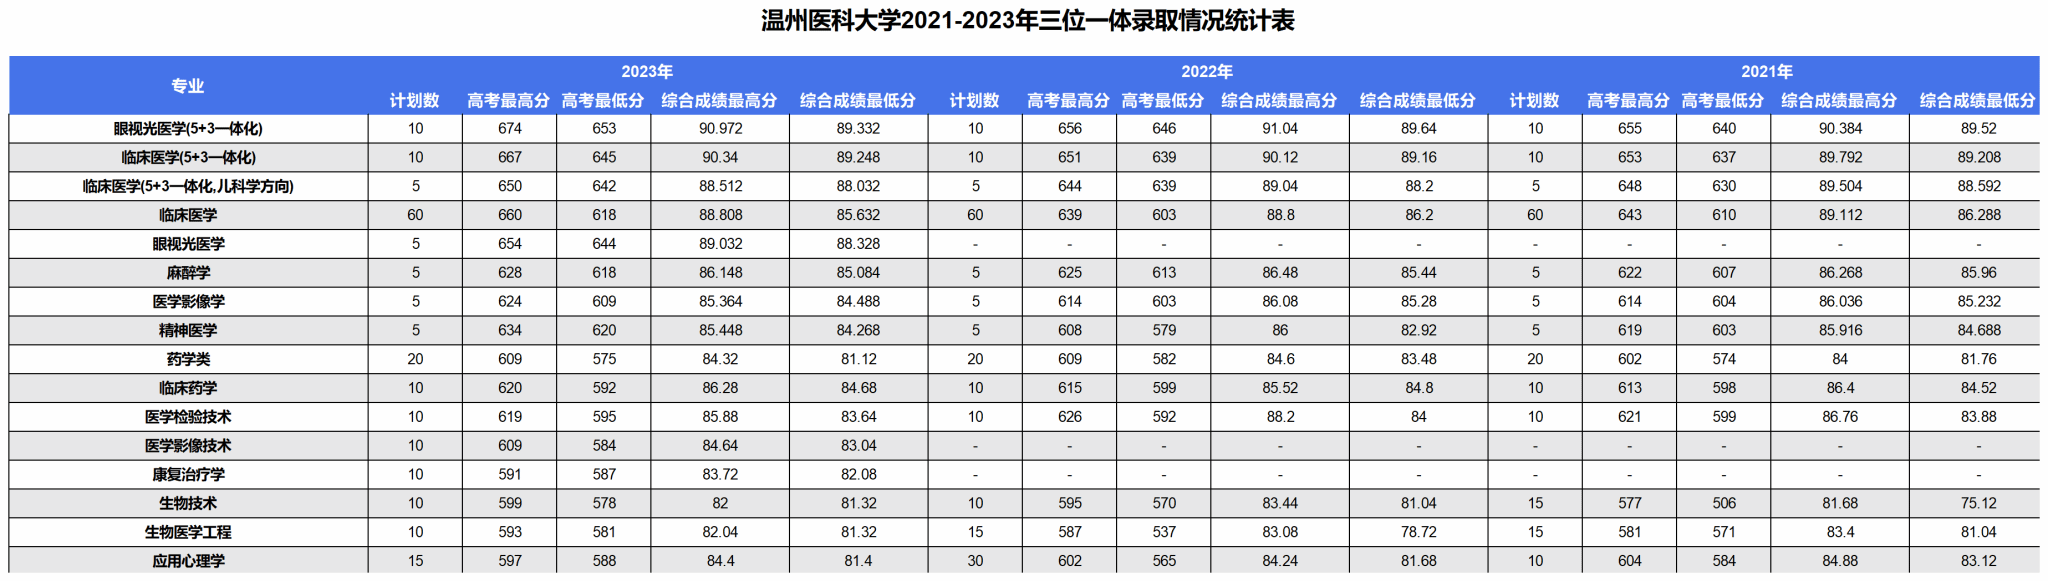 温州医科大学2021-2023年浙江省三位一体招生录取统计表